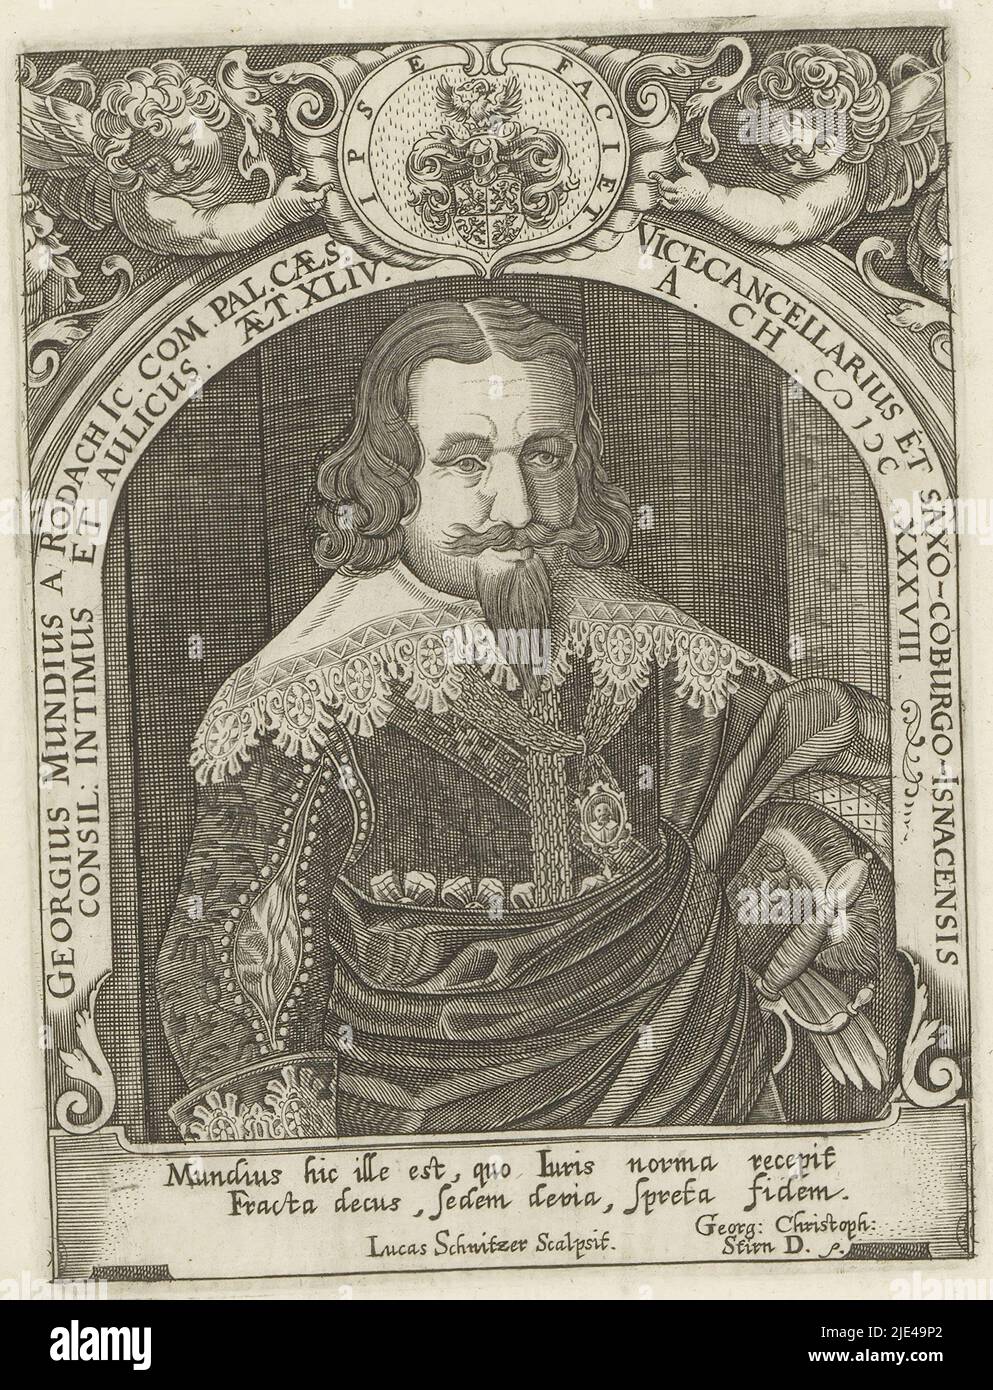 Portrait of Georg Mund von Rodach, Lukas Schnitzer, 1638 - 1671, print maker: Lukas Schnitzer, (mentioned on object), Georg Christoph Stirn, (mentioned on object), Neurenberg, 1638 - 1671, paper, engraving, h 157 mm - w 119 mm Stock Photo